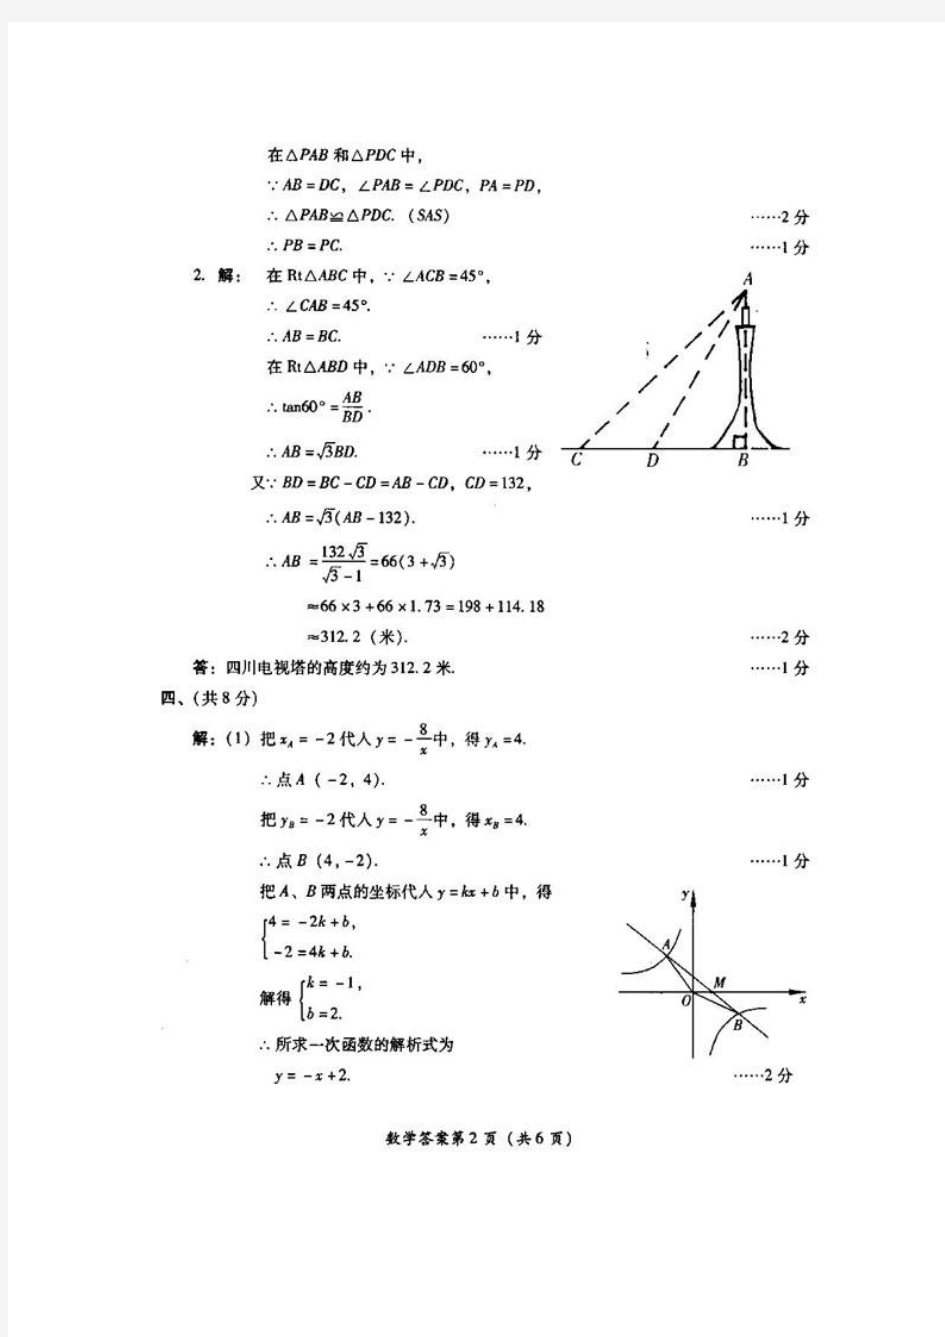 2003四川省中考数学试题答案